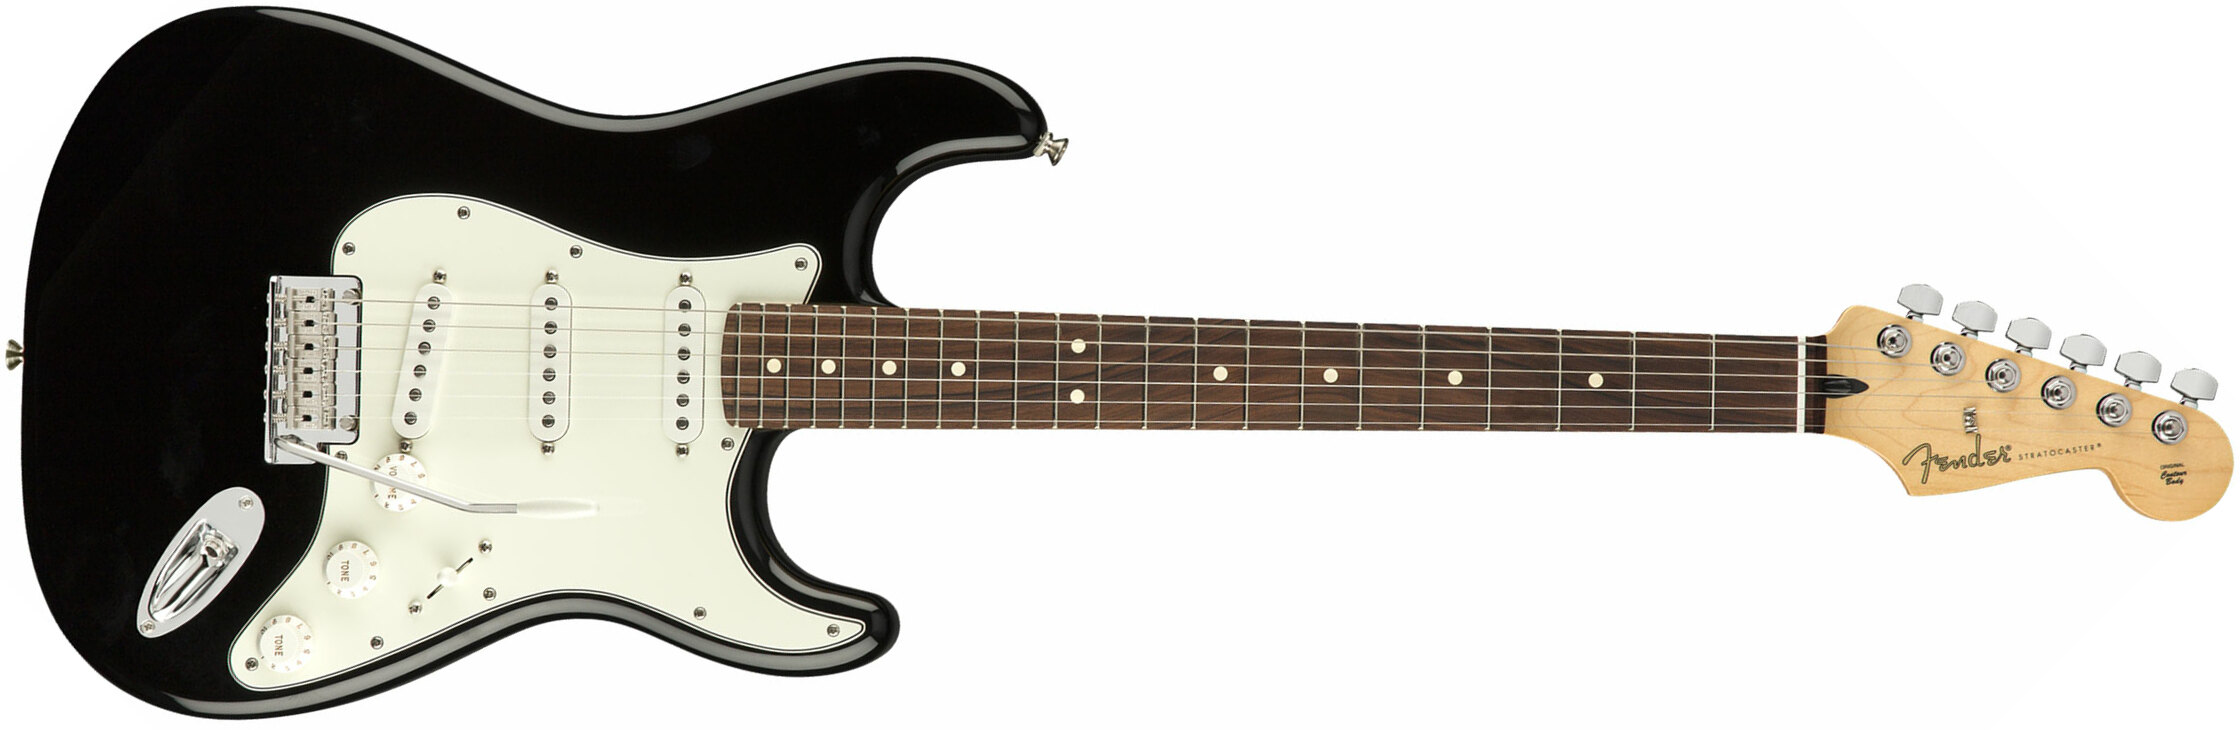 Fender Strat Player Mex Sss Pf - Black - Elektrische gitaar in Str-vorm - Main picture